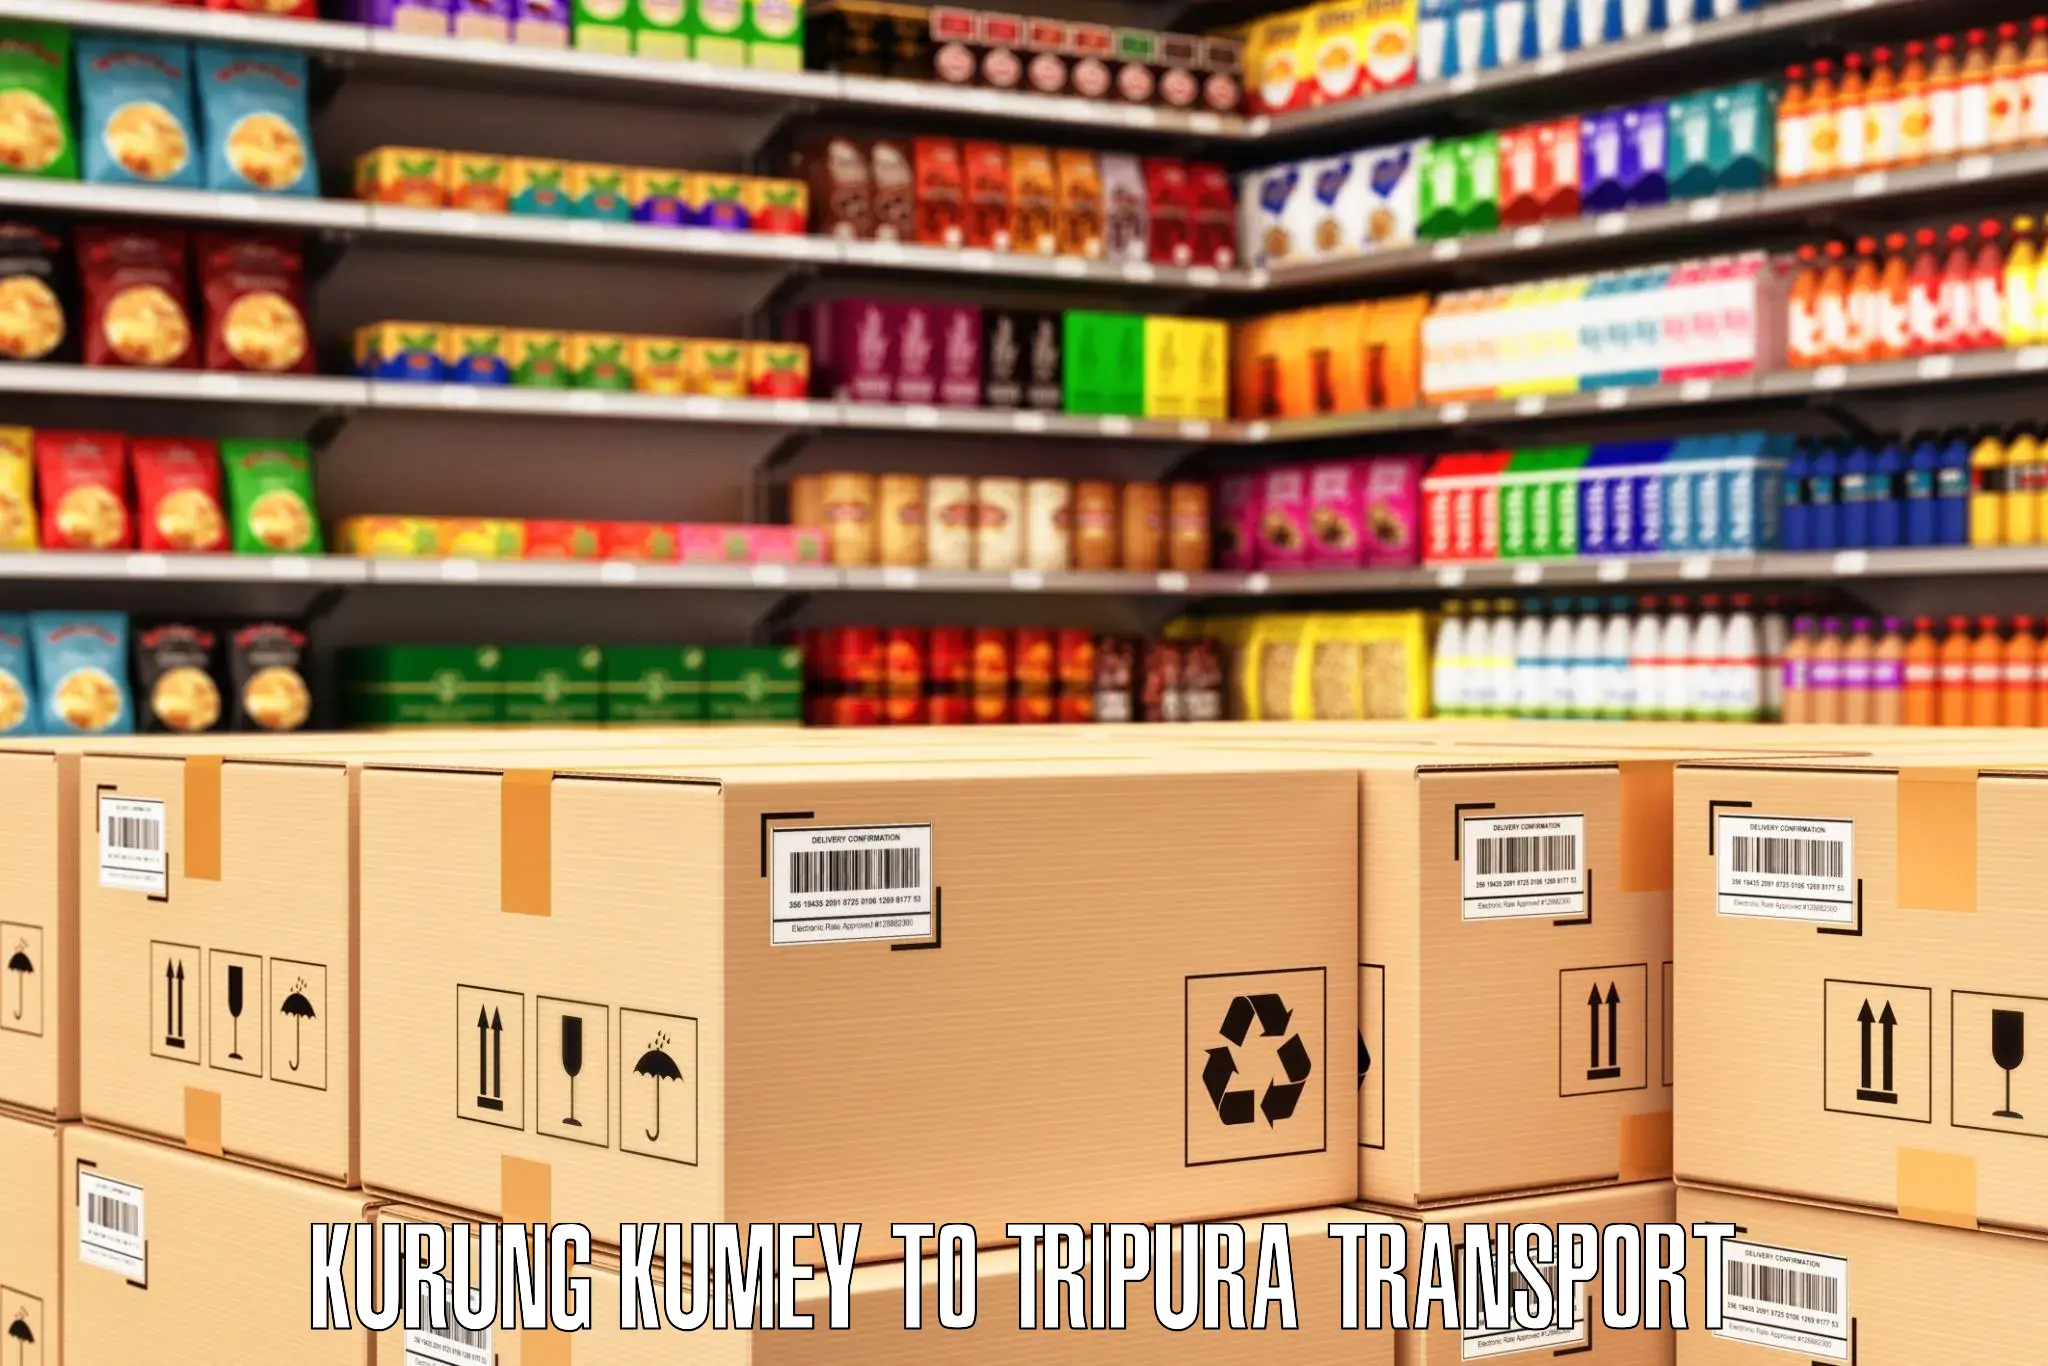 Truck transport companies in India in Kurung Kumey to Tripura